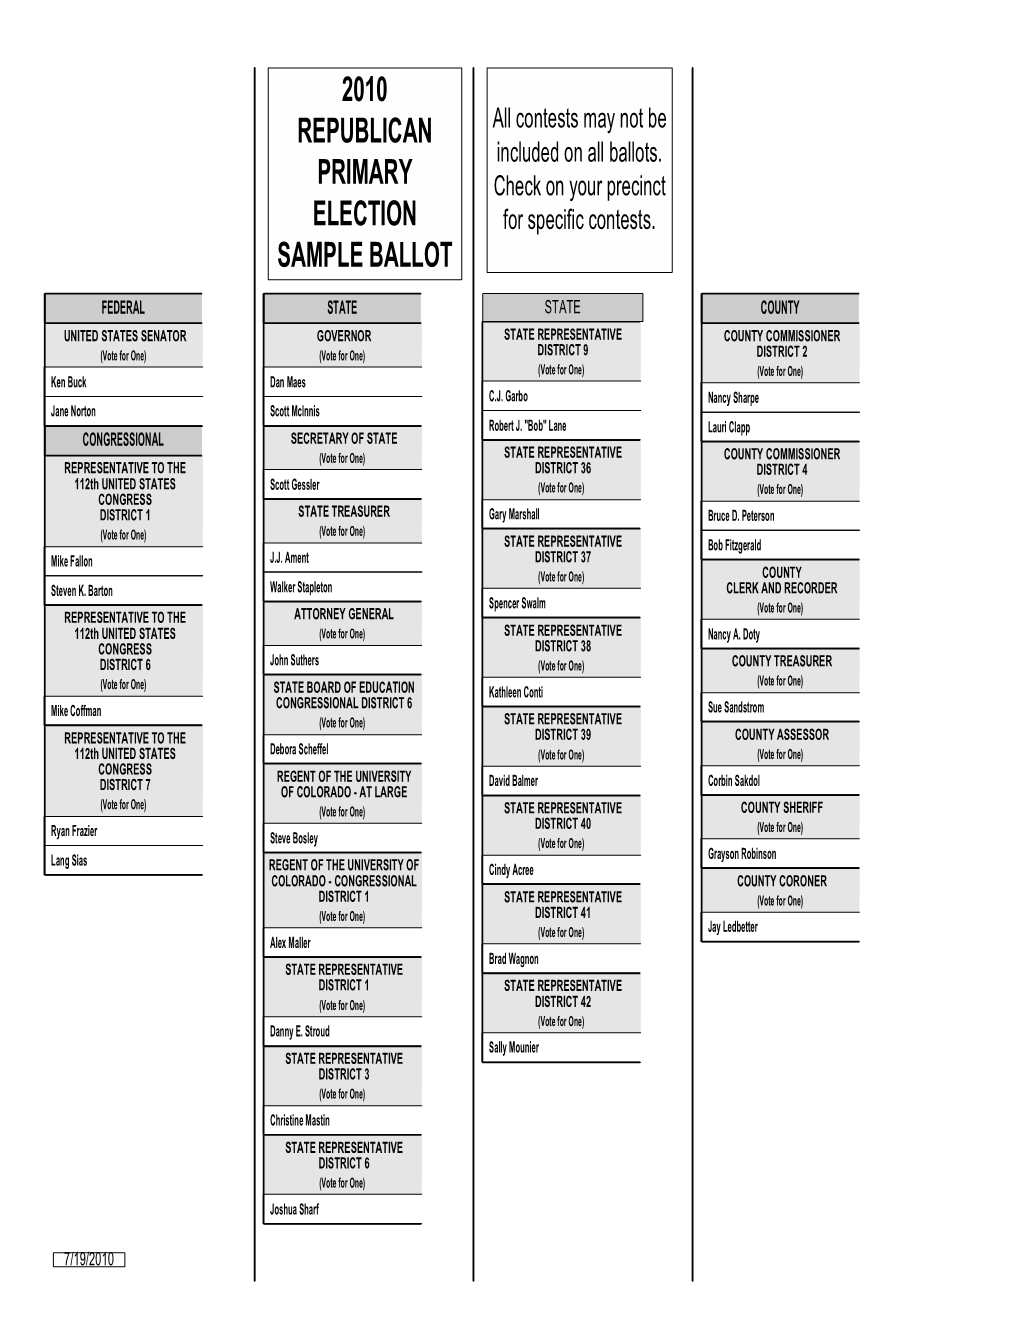 2010 Republican Primary Election Sample Ballot